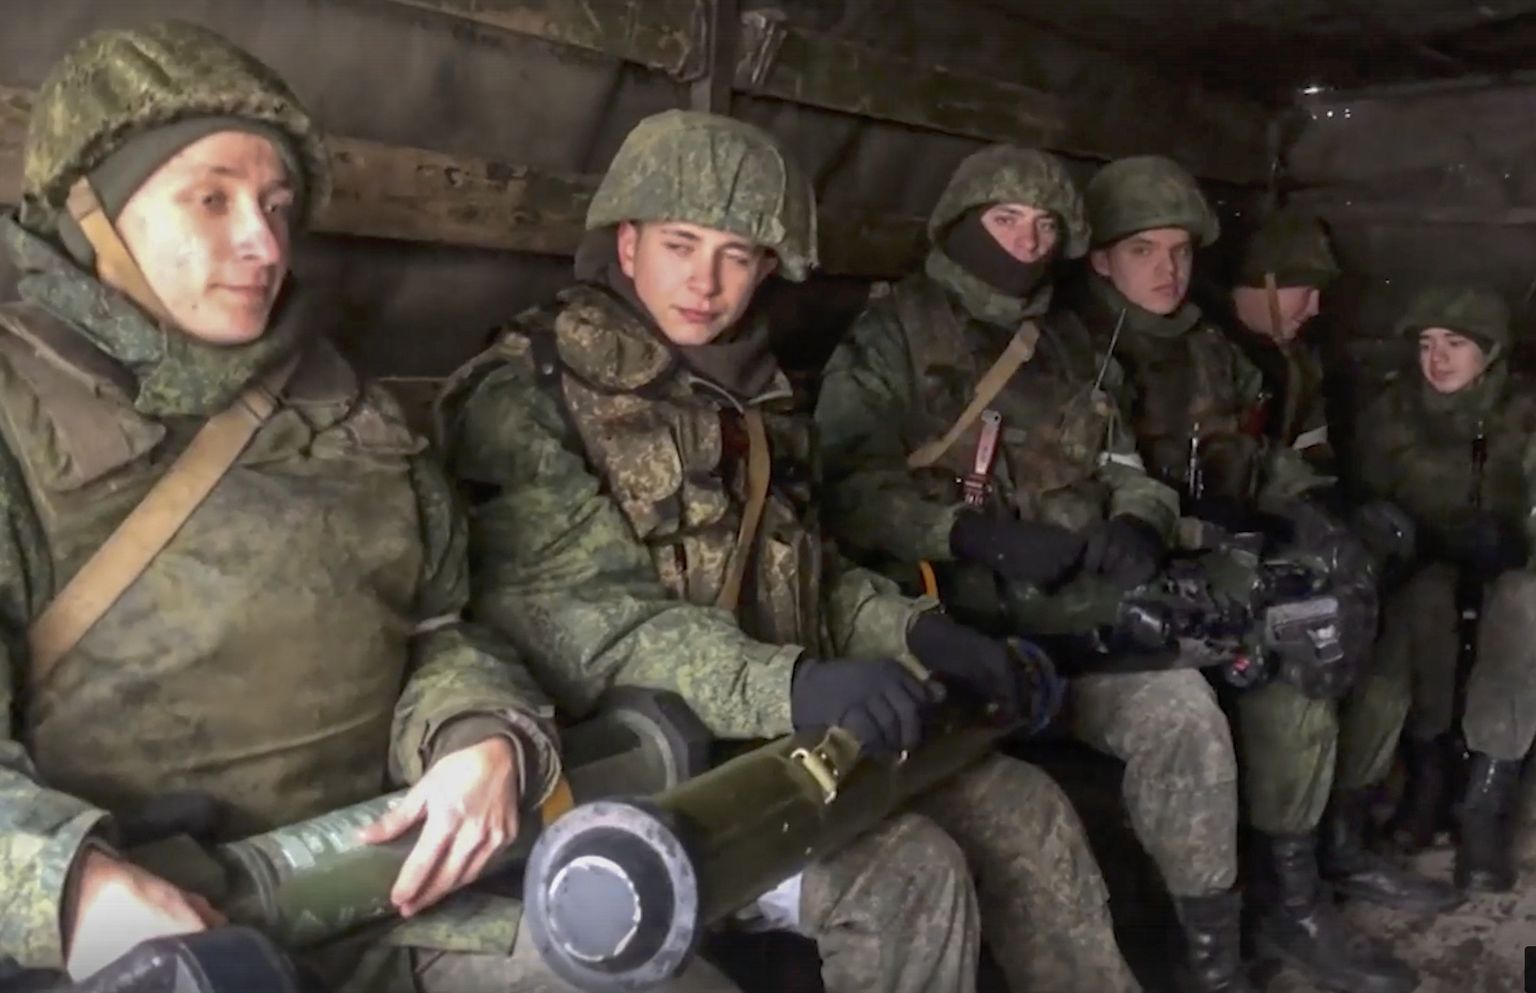 Venemaa kaitseministeeriumi avaldatud foto, millel on Vene sõdurid väidetavalt ukrainlaste poolt maha jäetud tankitõrjeraketiga. Foto on dateerimata